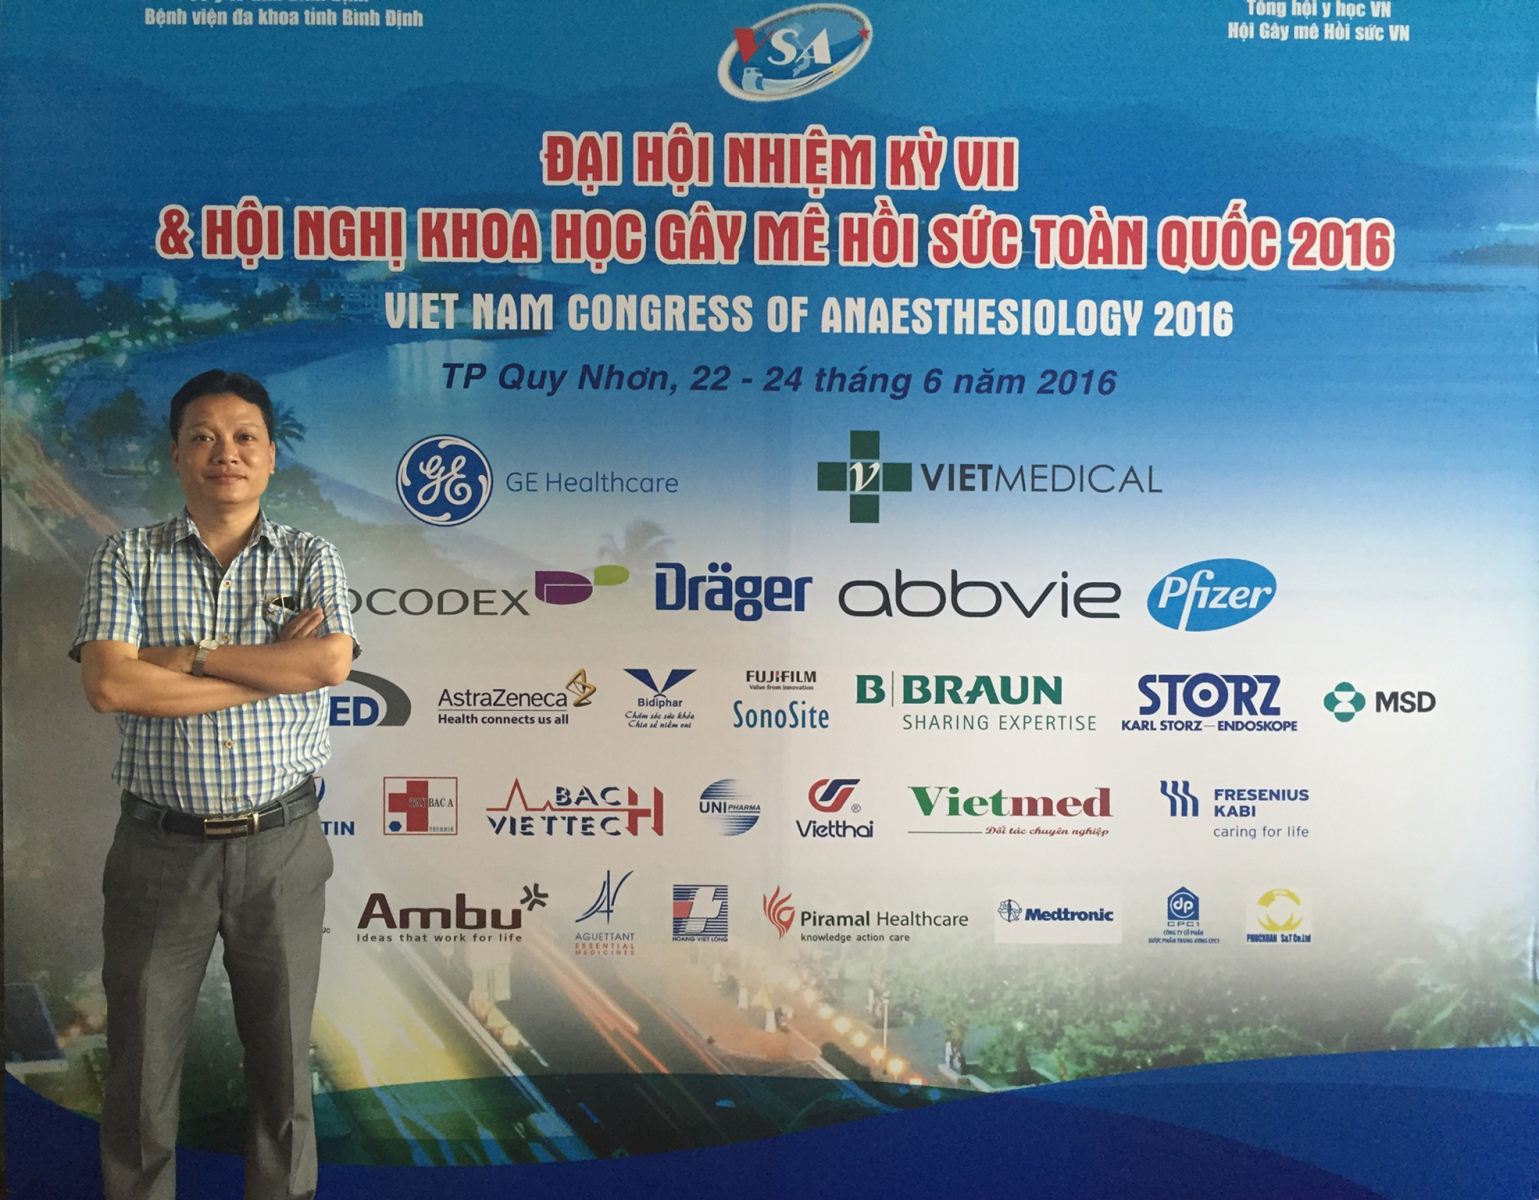 Vietmed tham gia Tài trợ cho Hội nghị khoa học Gây Mê Hồi Sức toàn quốc năm 2016